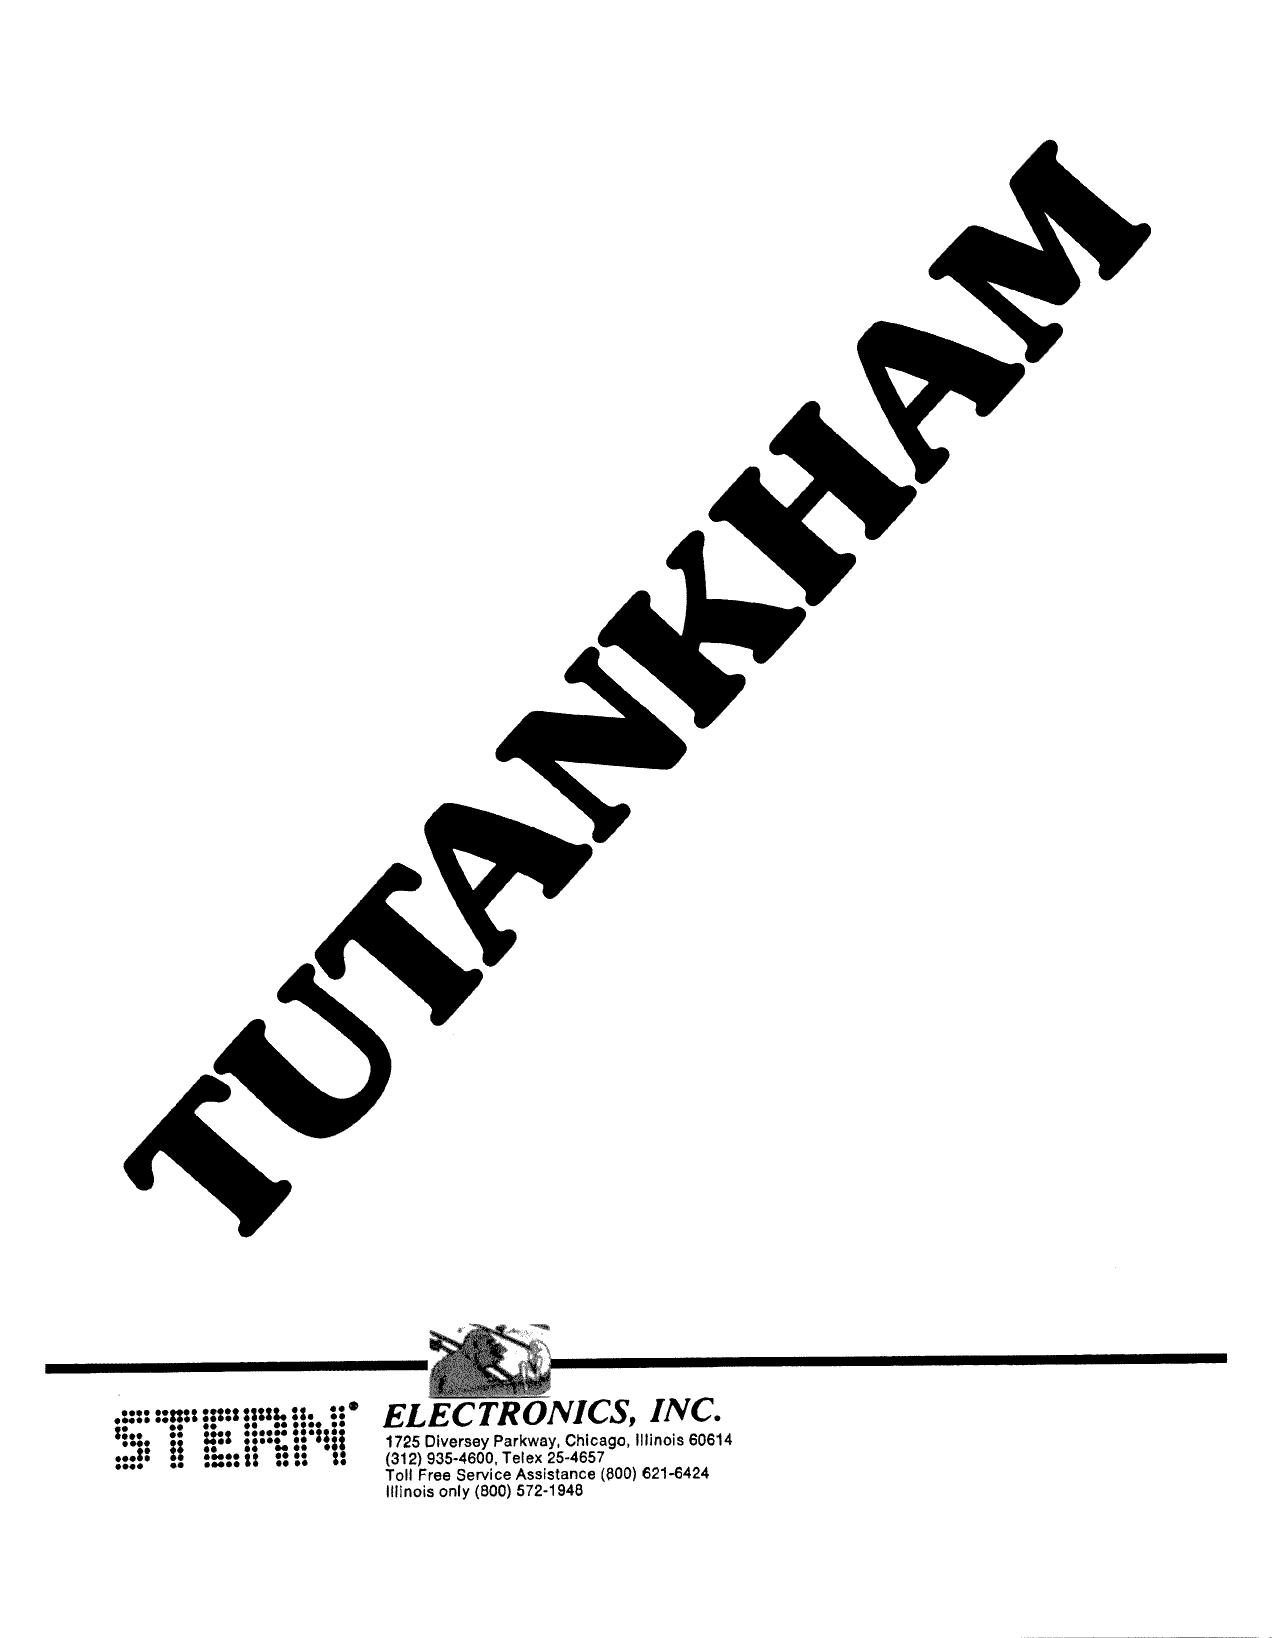 Tutankham Manual